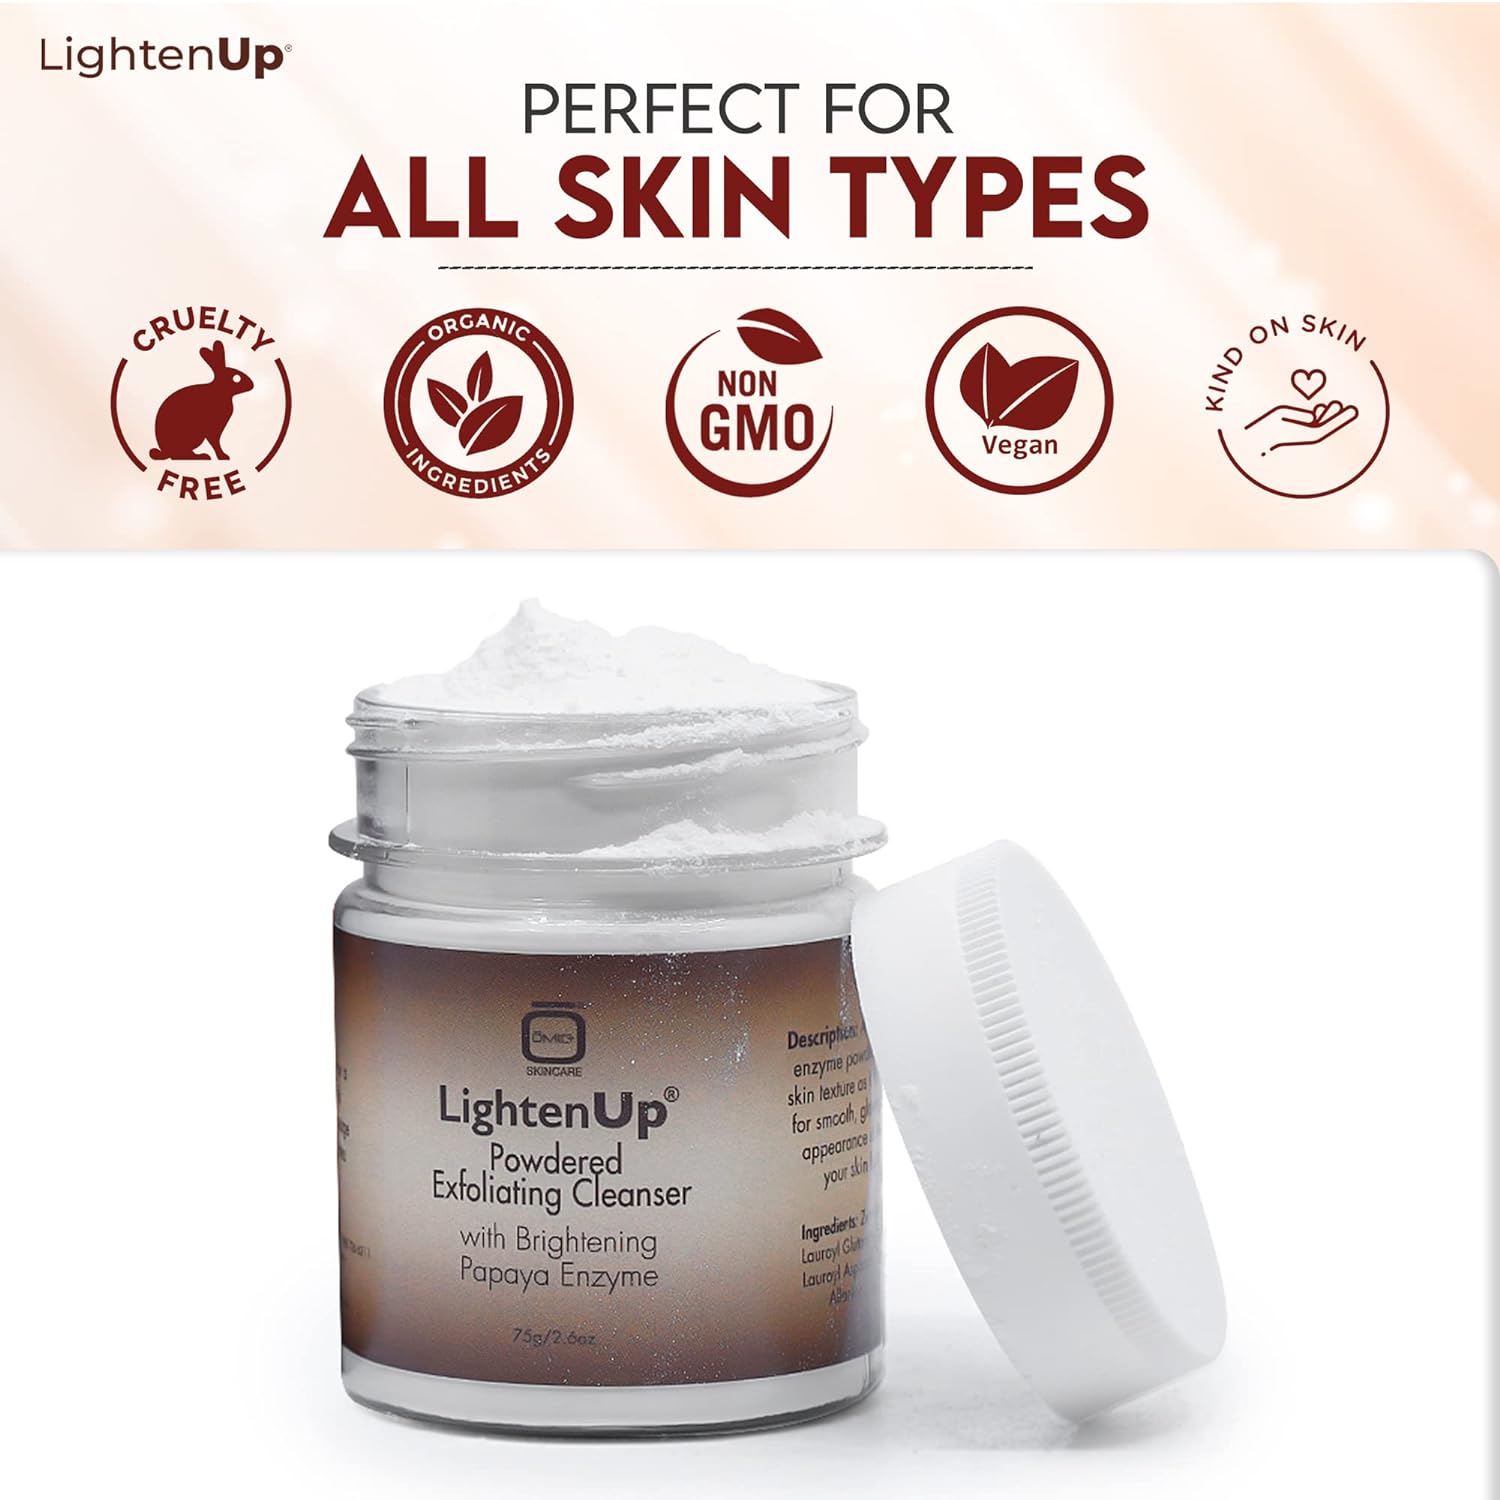 LightenUp Plus Powdered Exfoliating Cleanser 75g LightenUp - Mitchell Brands - Skin Lightening, Skin Brightening, Fade Dark Spots, Shea Butter, Hair Growth Products